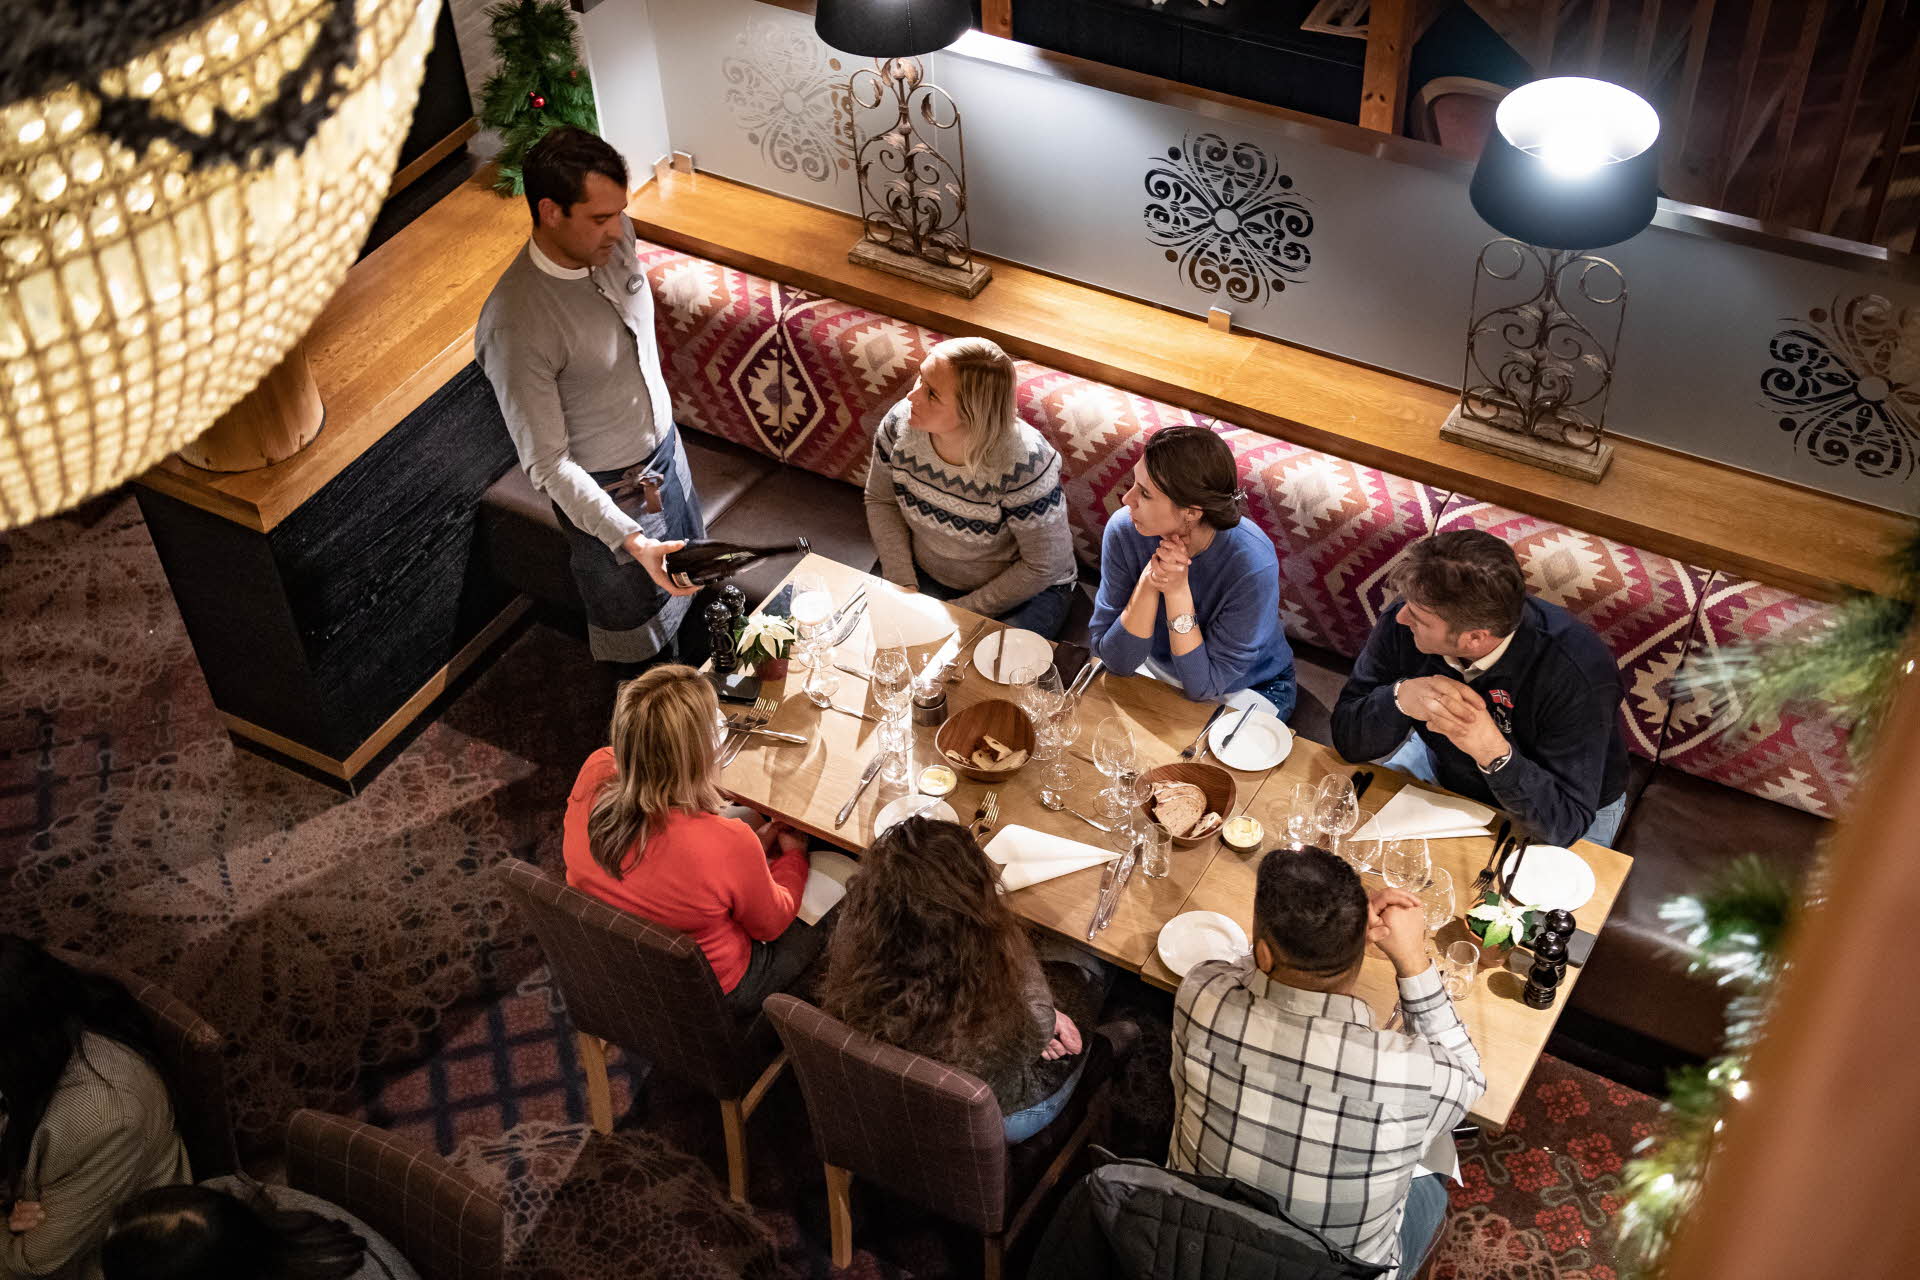 レストランアルヴェンのテーブル席で、ワインを注ぐウェイターを見ている6人のグループ